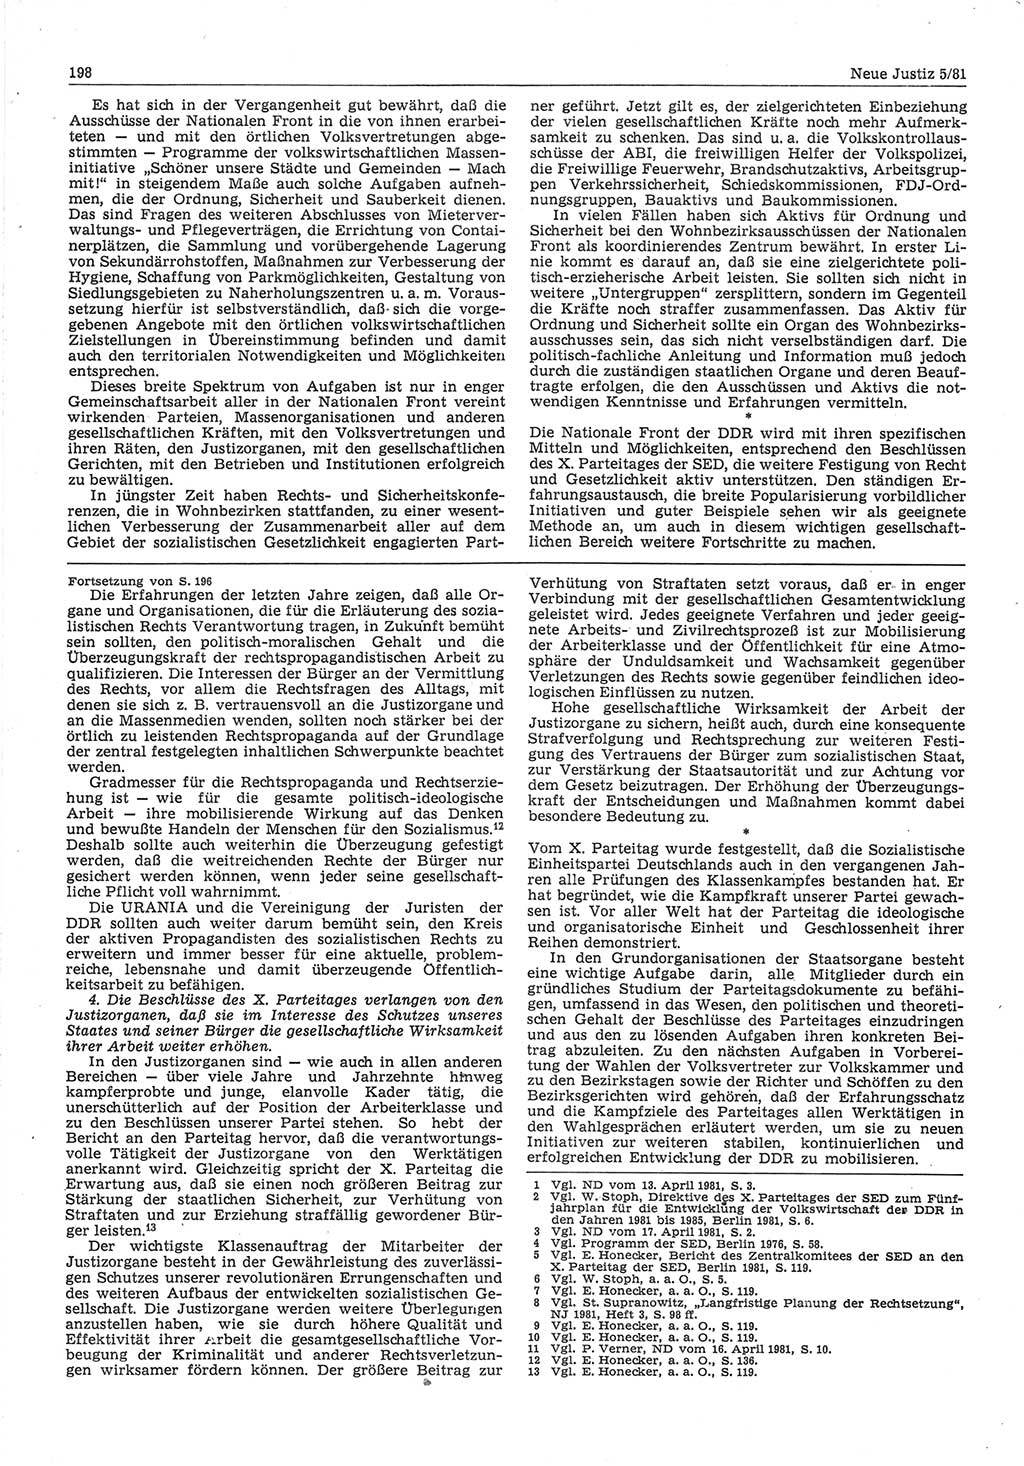 Neue Justiz (NJ), Zeitschrift für sozialistisches Recht und Gesetzlichkeit [Deutsche Demokratische Republik (DDR)], 35. Jahrgang 1981, Seite 198 (NJ DDR 1981, S. 198)